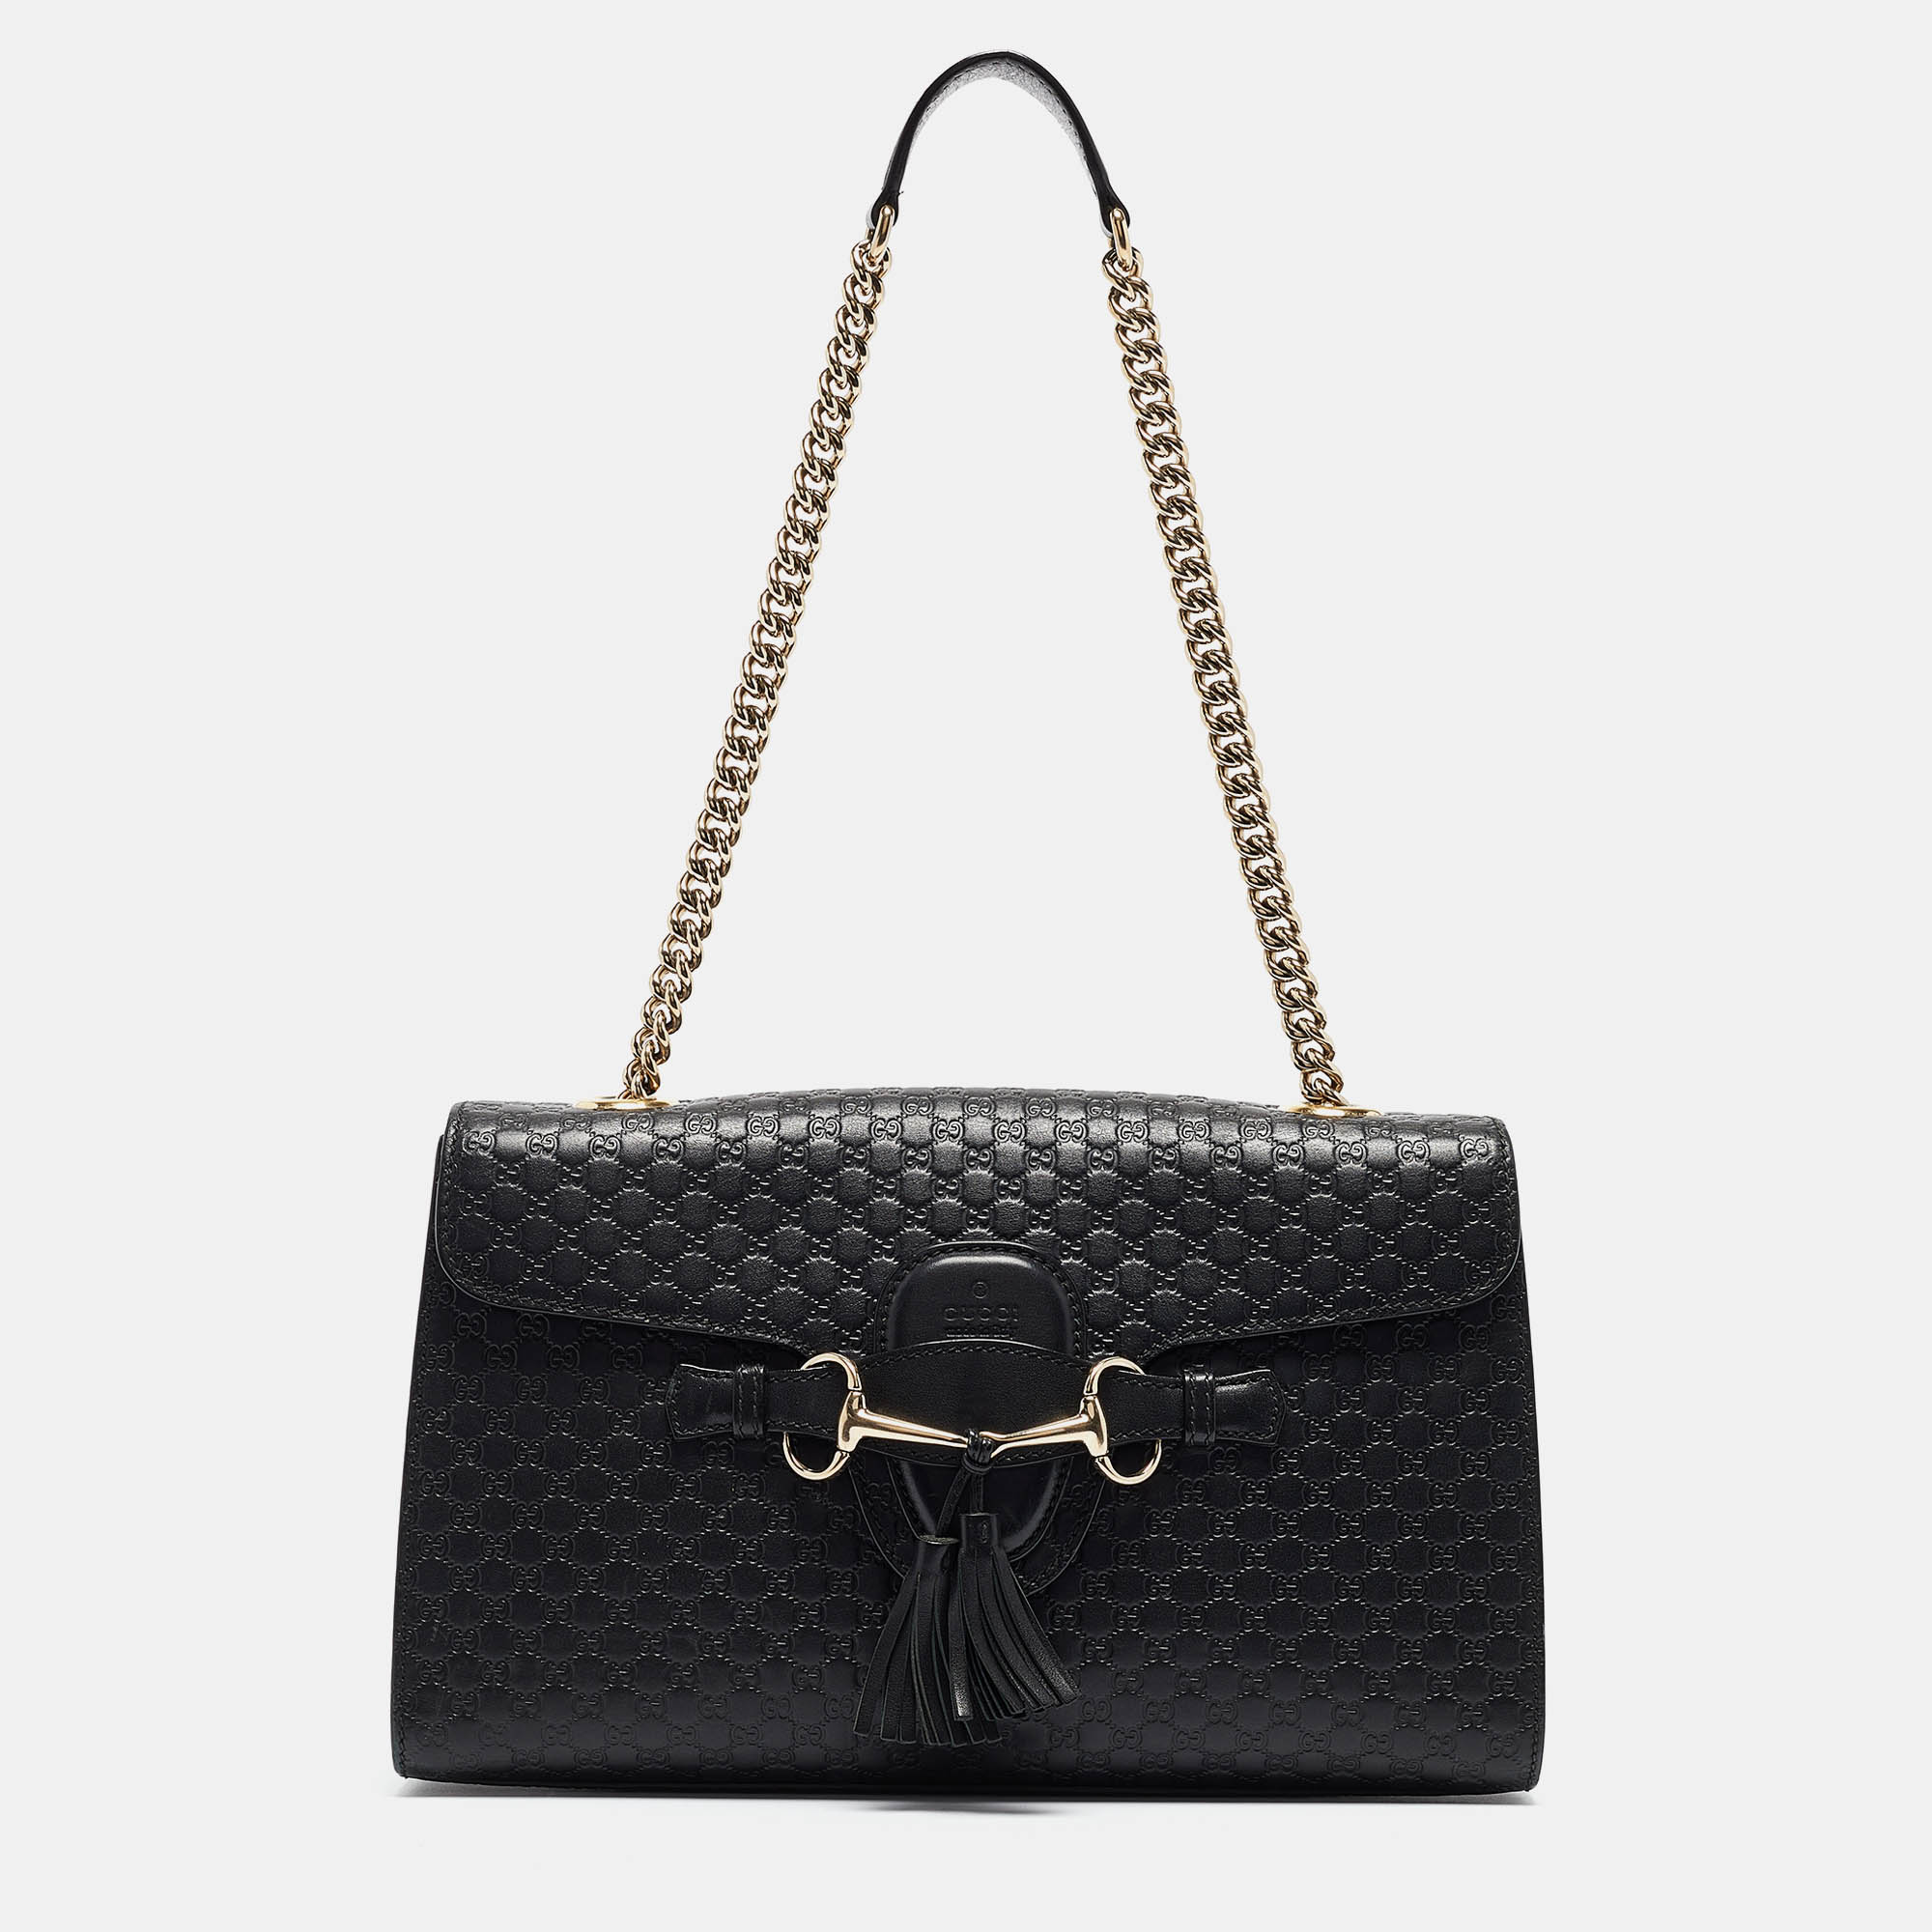 Gucci black leather medium emily shoulder bag